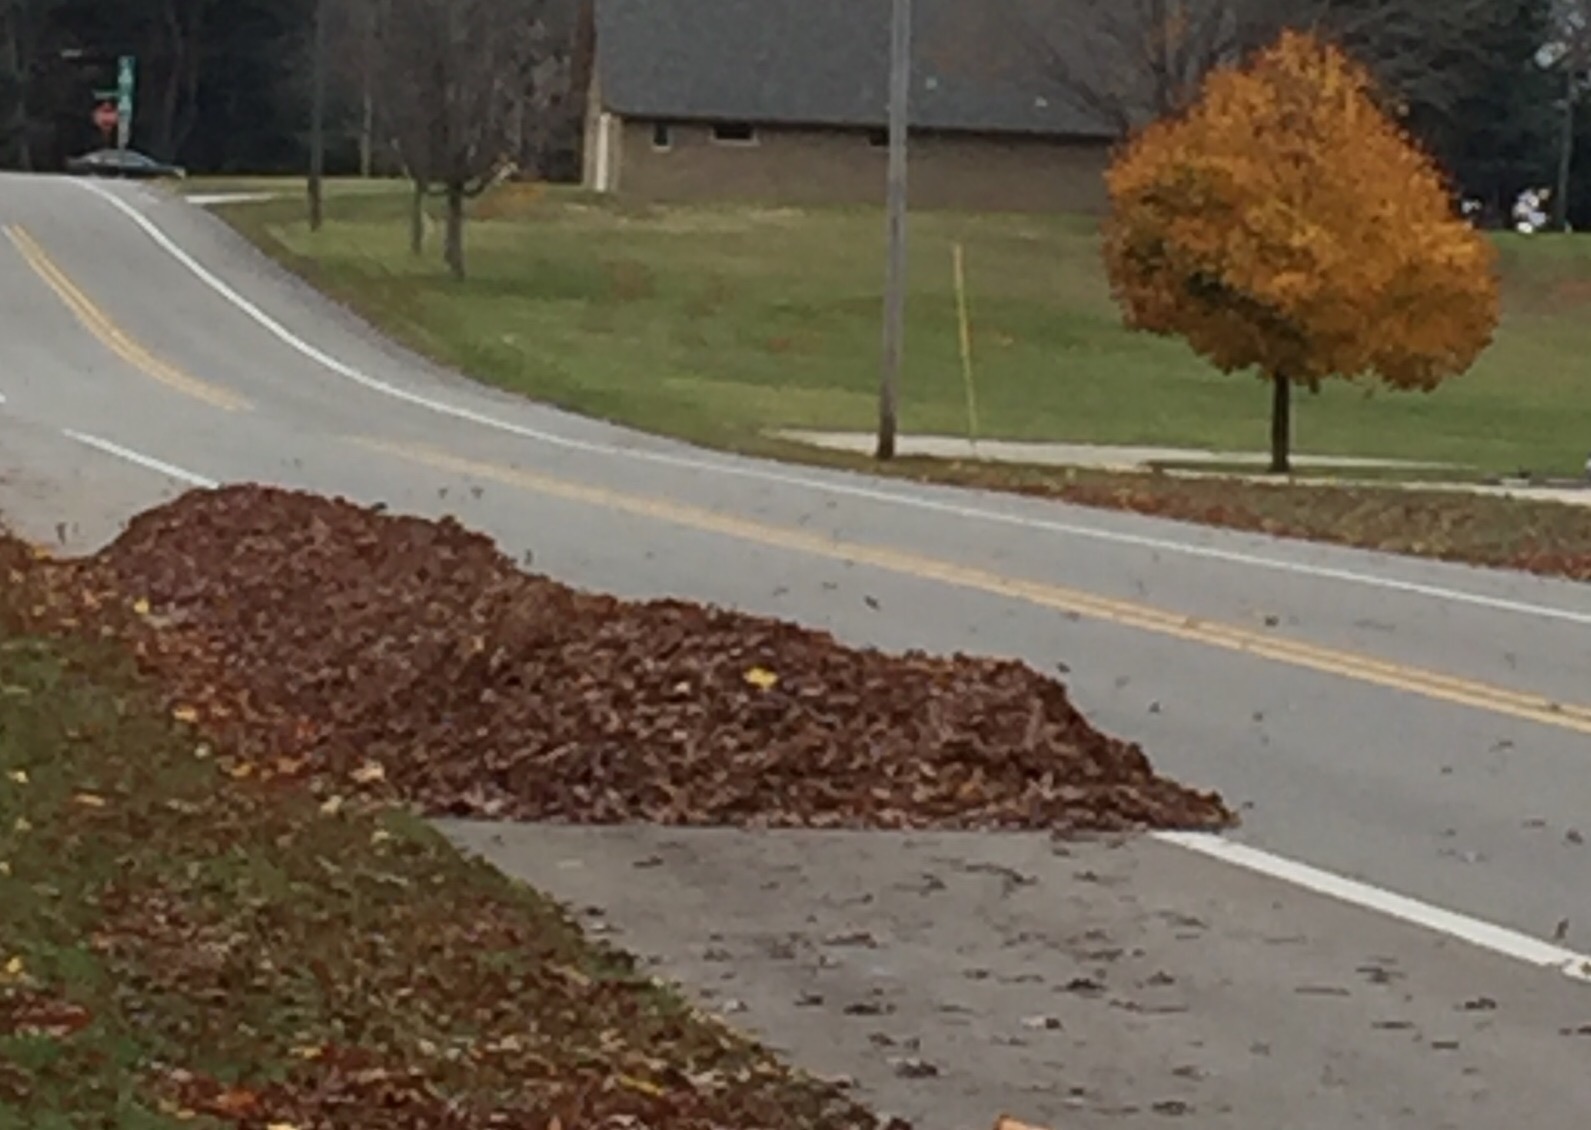 Bike-pedestrian path or leaf-yard waste path?